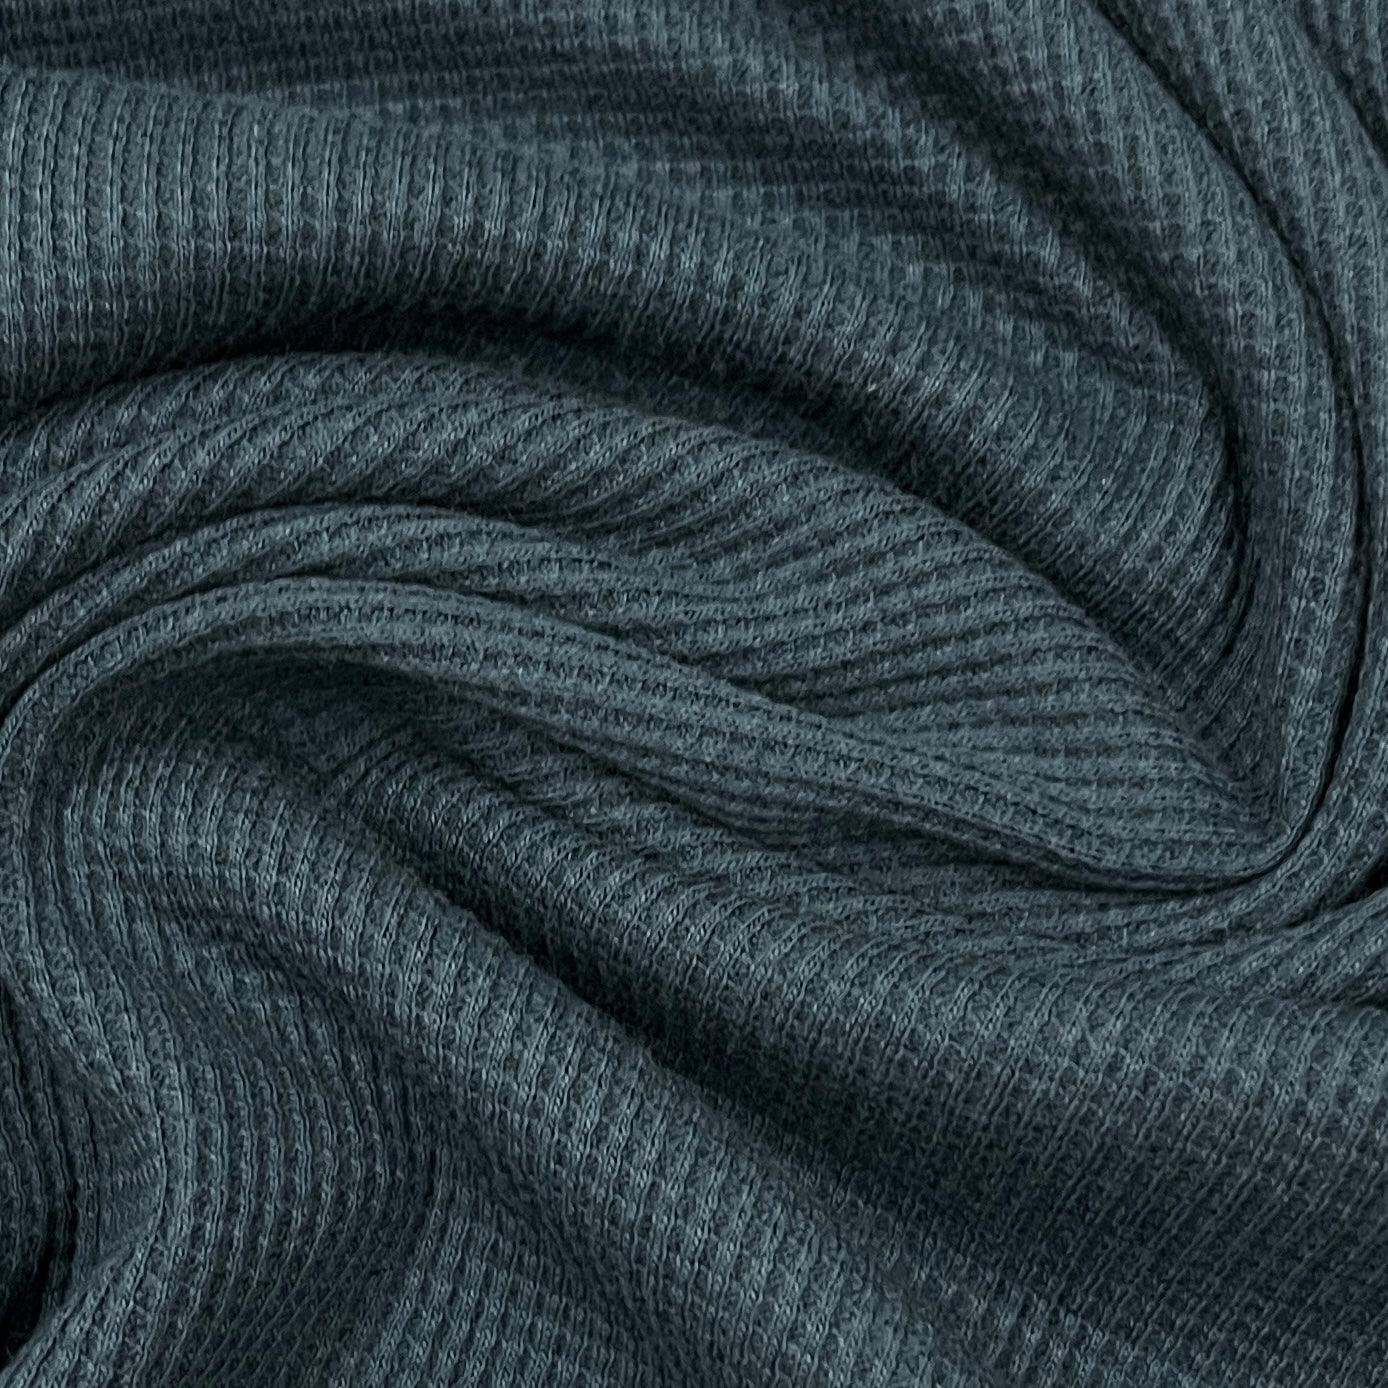 Ultramarine Organic Cotton Waffle Thermal Fabric - Nature's Fabrics